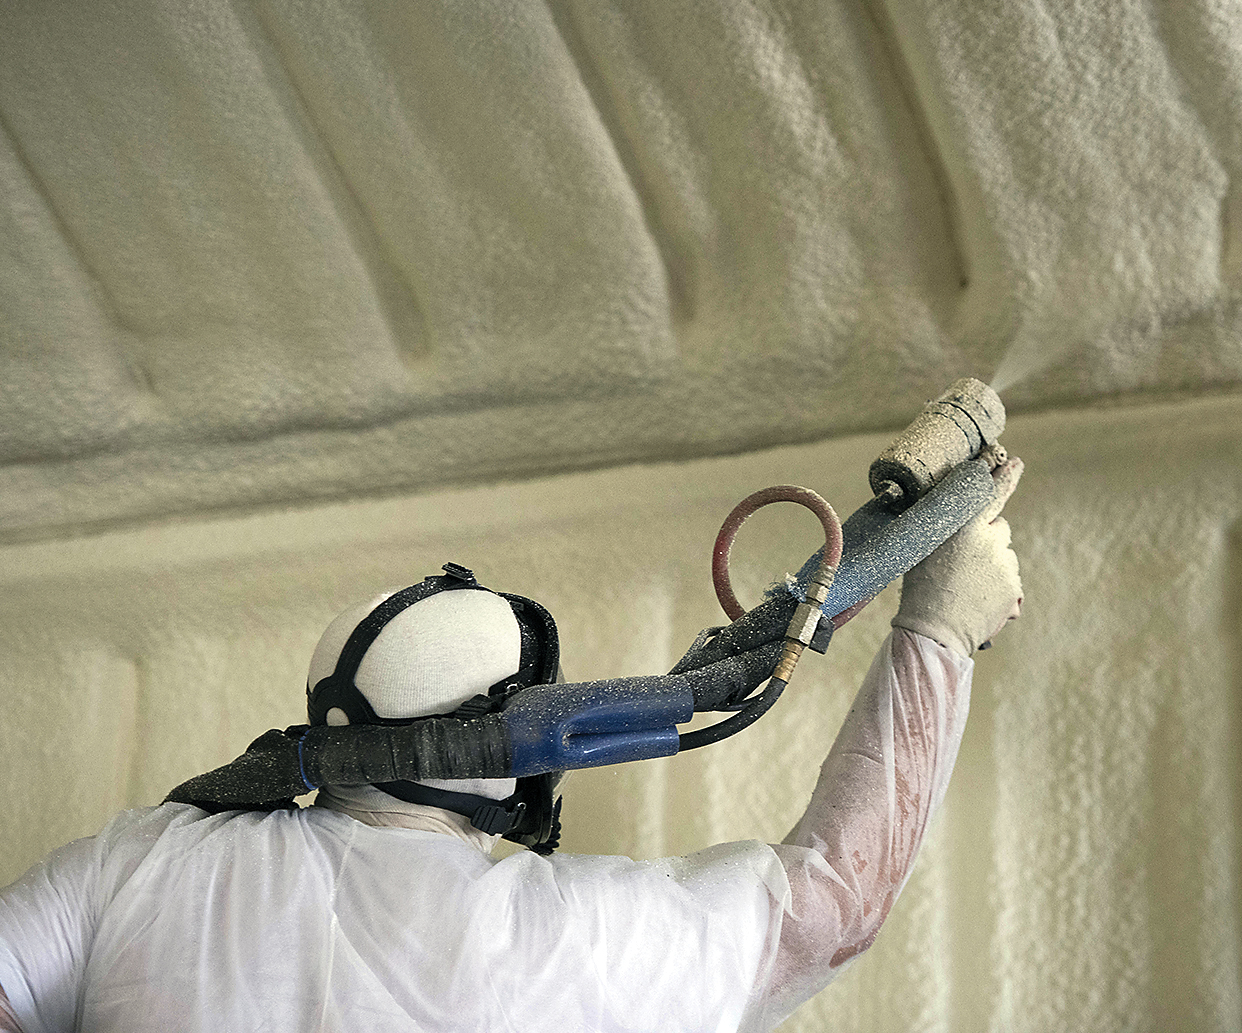 worker spraying SPF spray foam in building wearing proper PPE